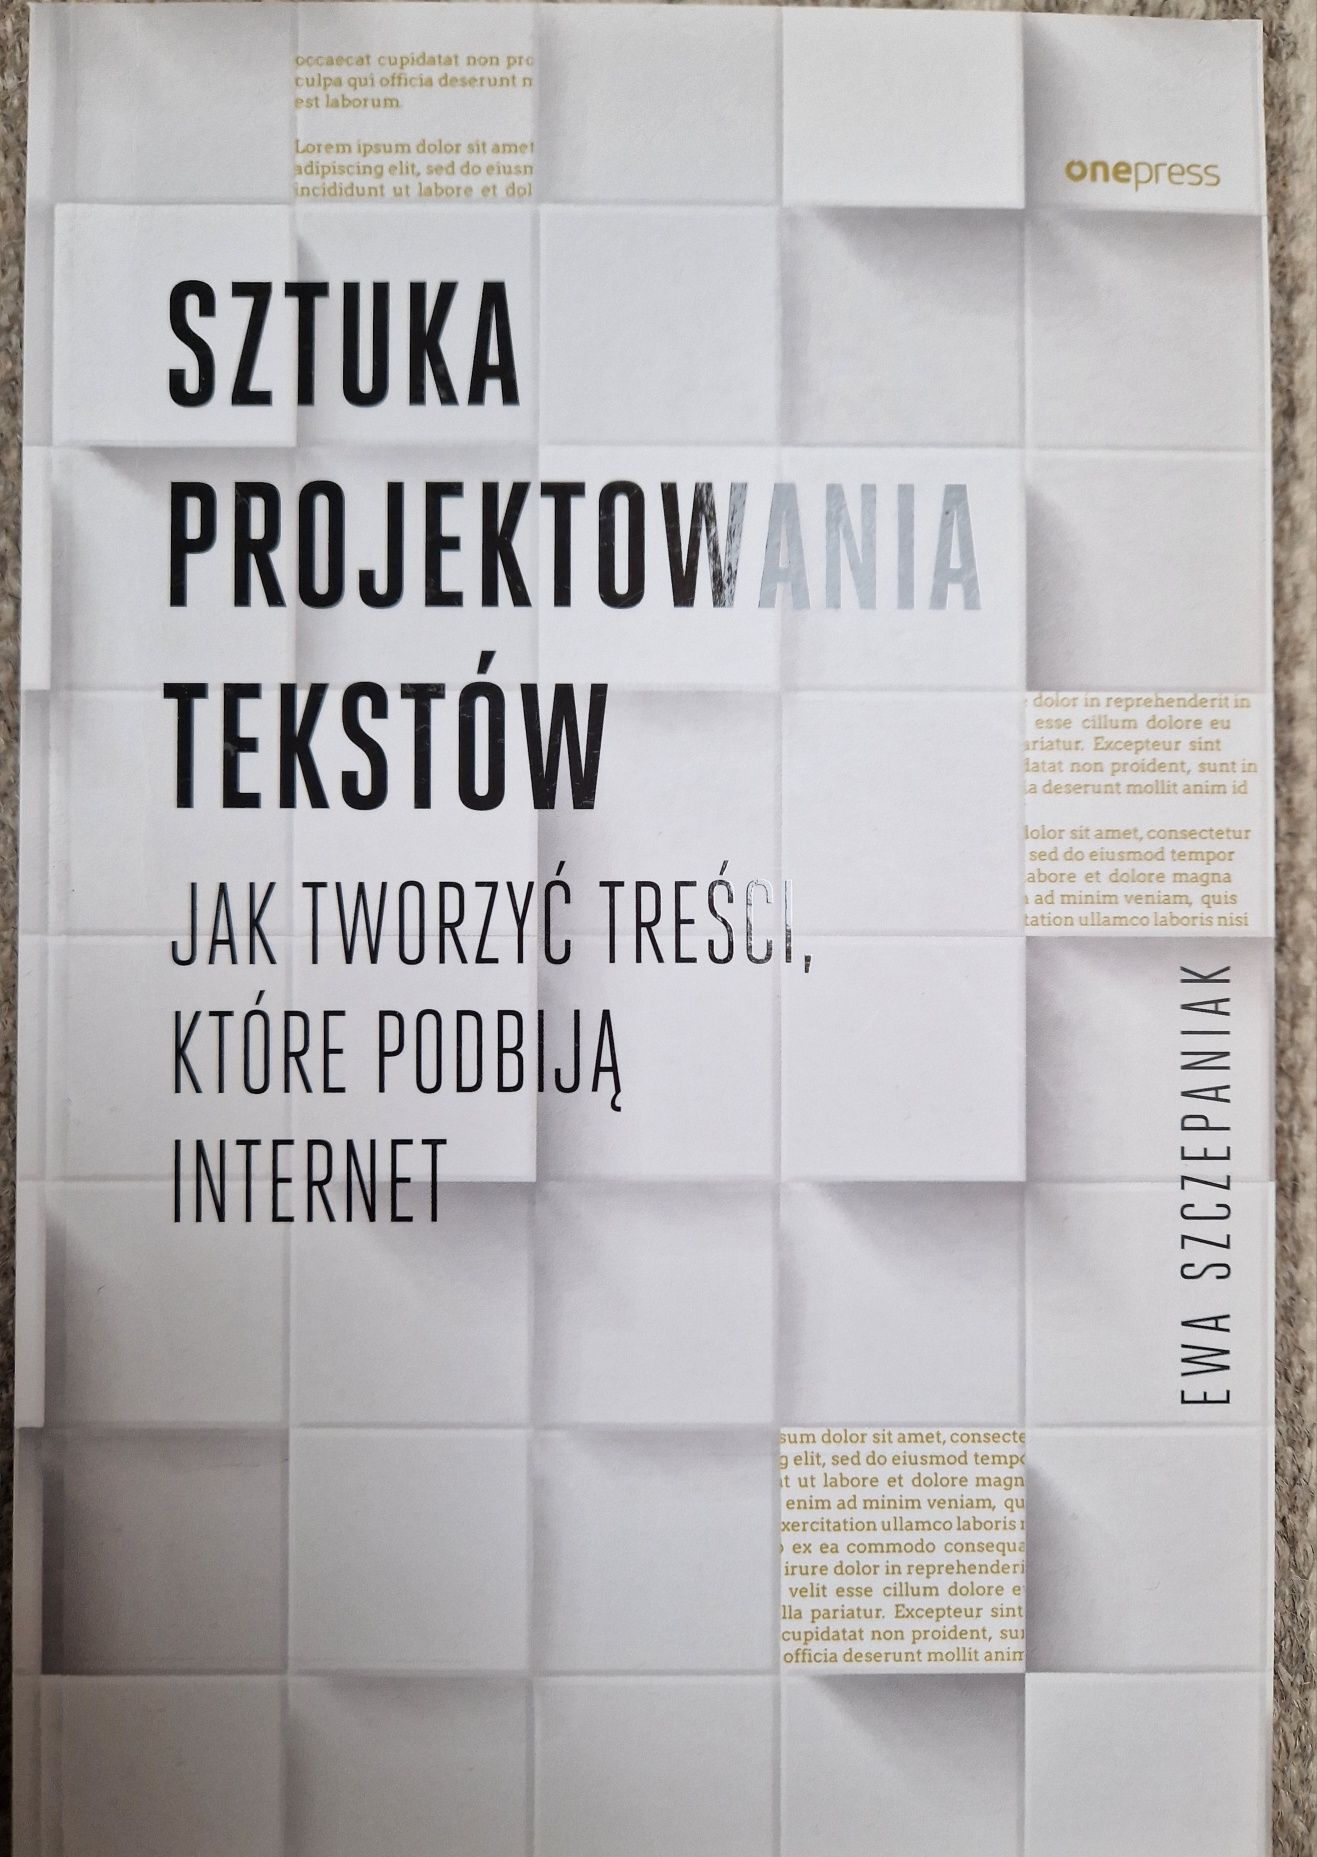 Sztuka projektowania tekstów Ewa Szczepaniak NOWA